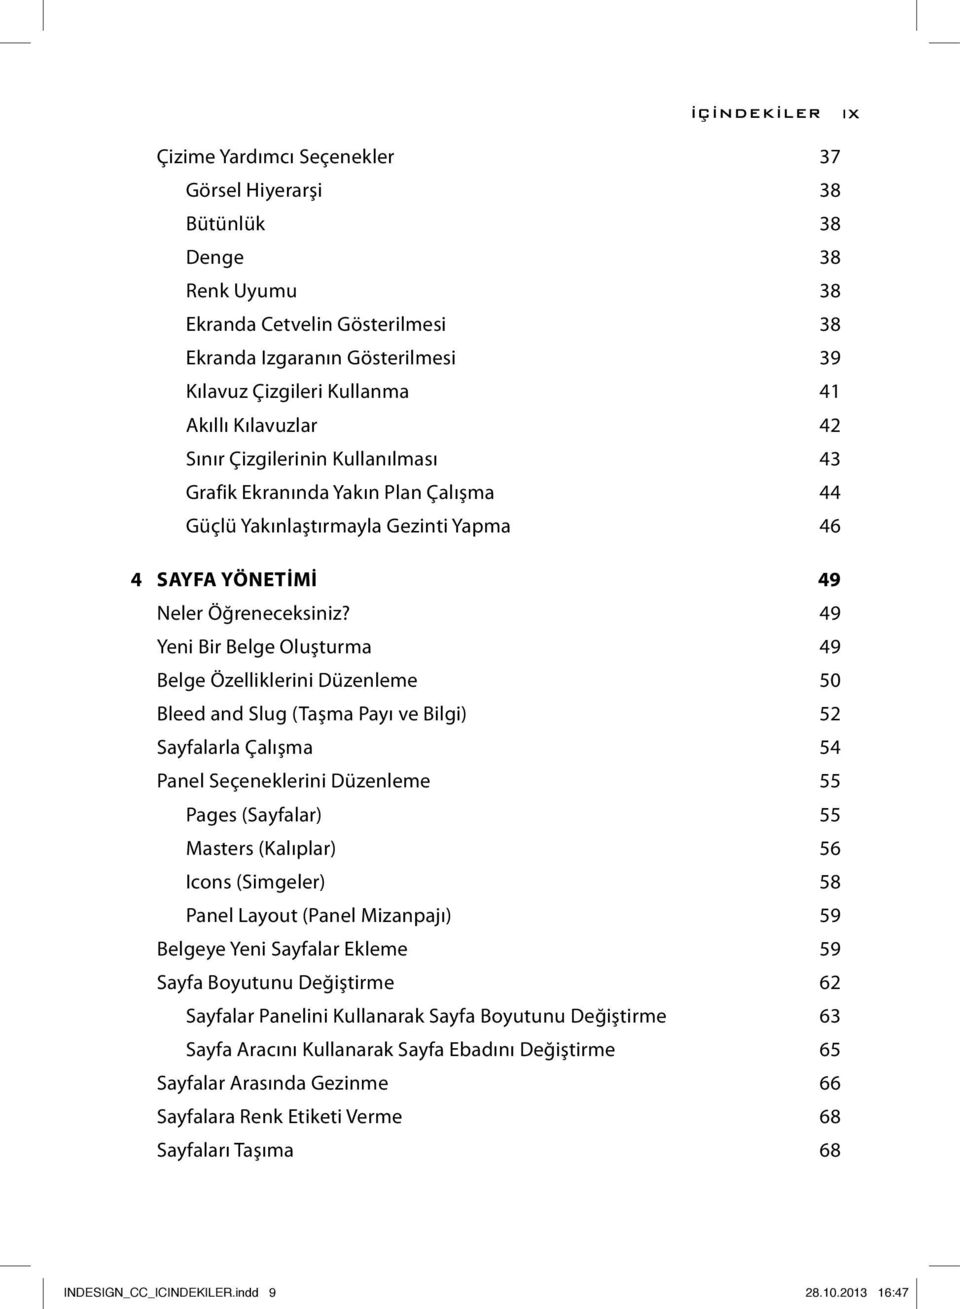 49 Yeni Bir Belge Oluşturma 49 Belge Özelliklerini Düzenleme 50 Bleed and Slug (Taşma Payı ve Bilgi) 52 Sayfalarla Çalışma 54 Panel Seçeneklerini Düzenleme 55 Pages (Sayfalar) 55 Masters (Kalıplar)